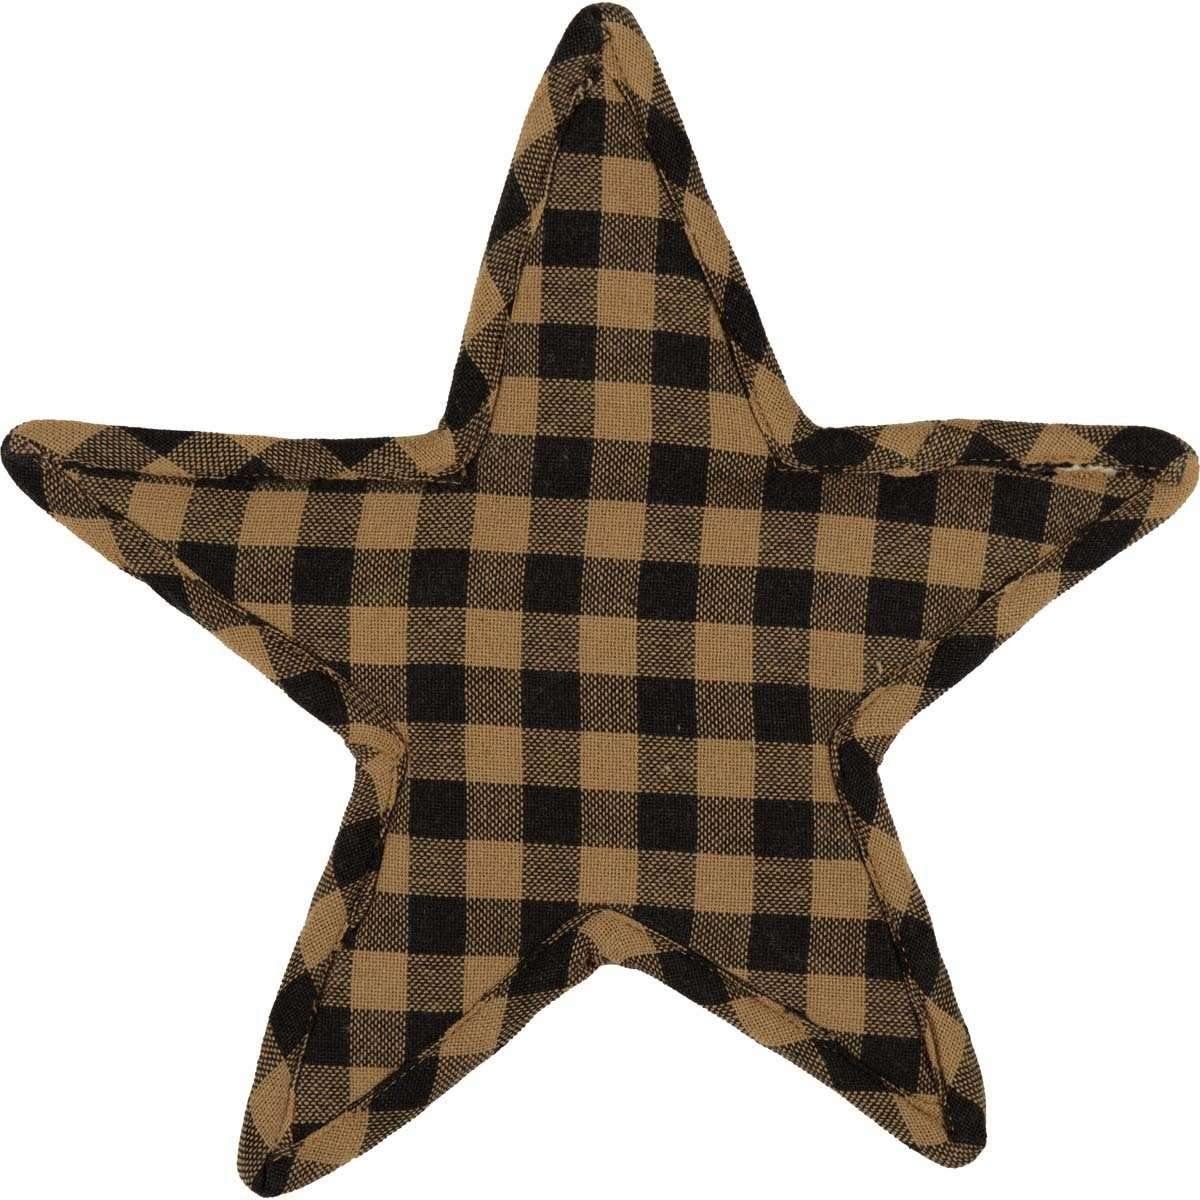 Black Star Trivet Star Shape 10" VHC Brands